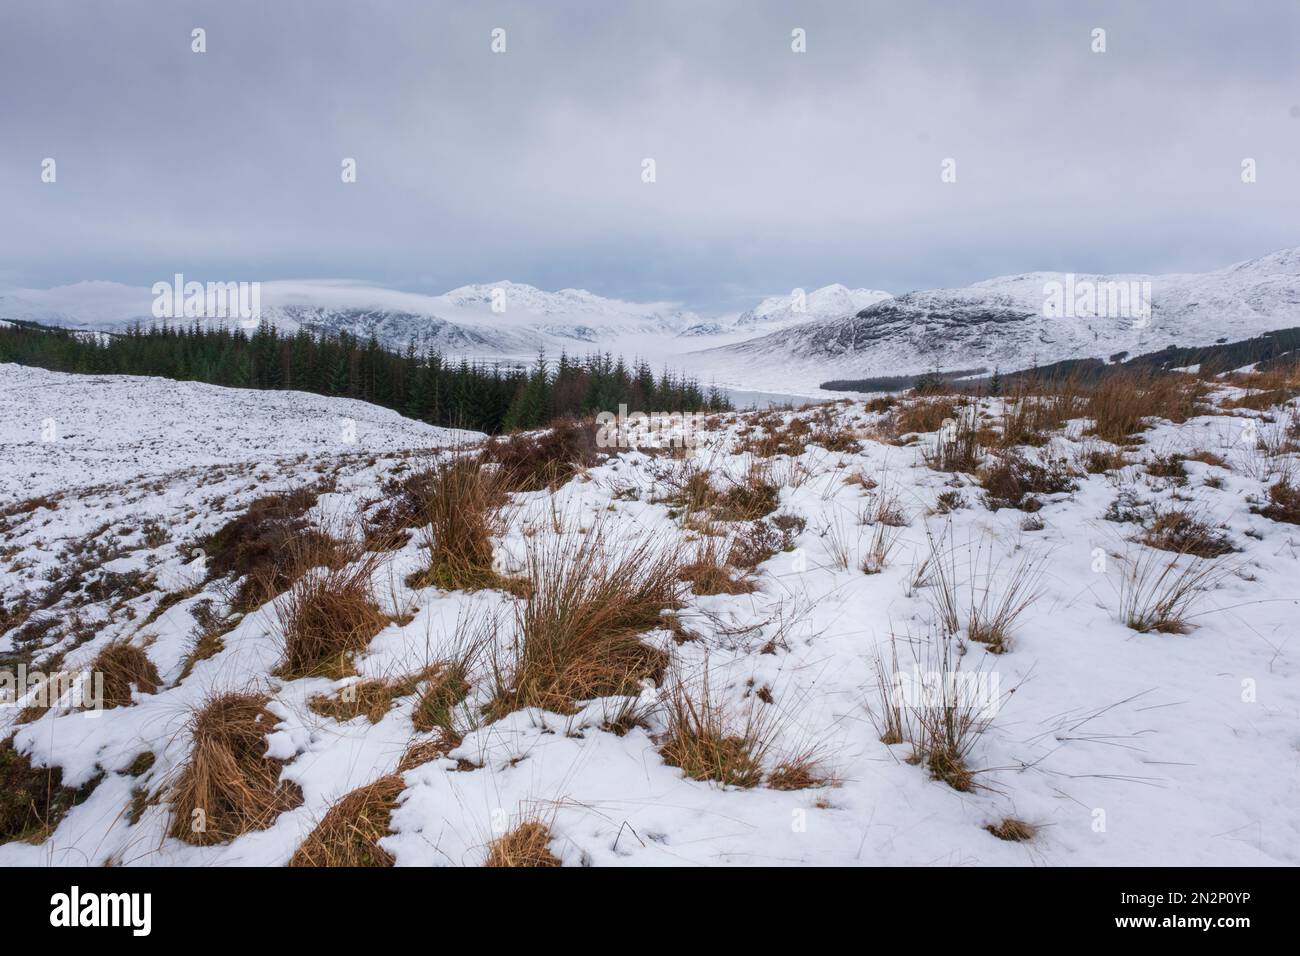 Regno Unito, Scozia. Paesaggio invernale nelle Highlands scozzesi, montagne, colline e campi ricoperti di neve. Prateria e conifere. Nessuna gente Foto Stock